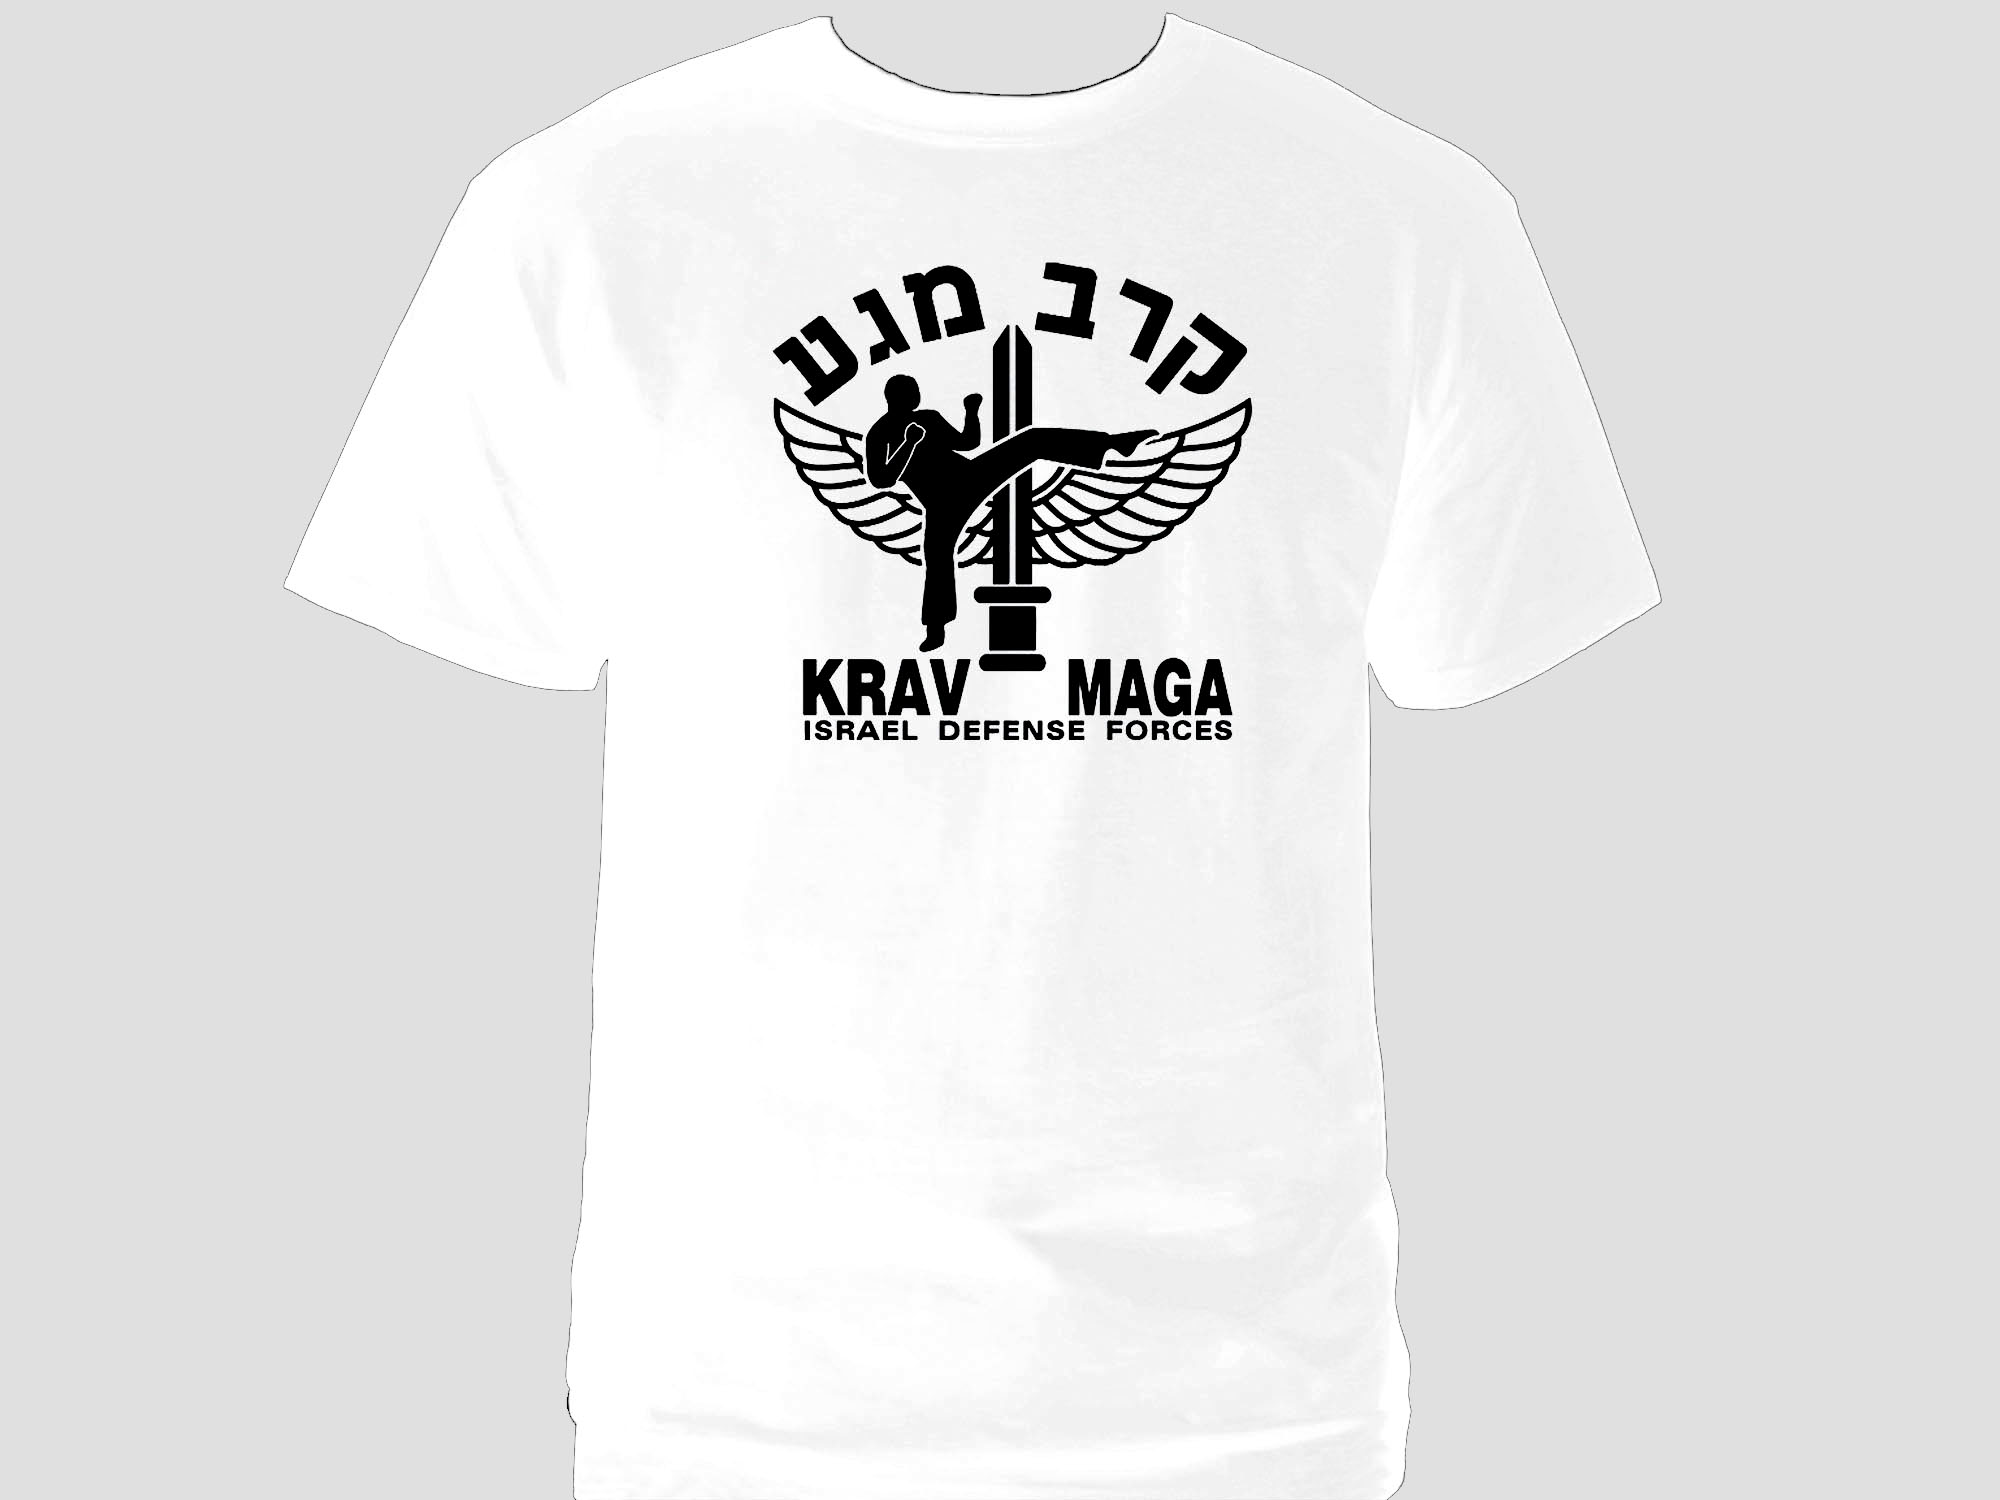 Krav maga emblem 100% cotton white new t-shirt